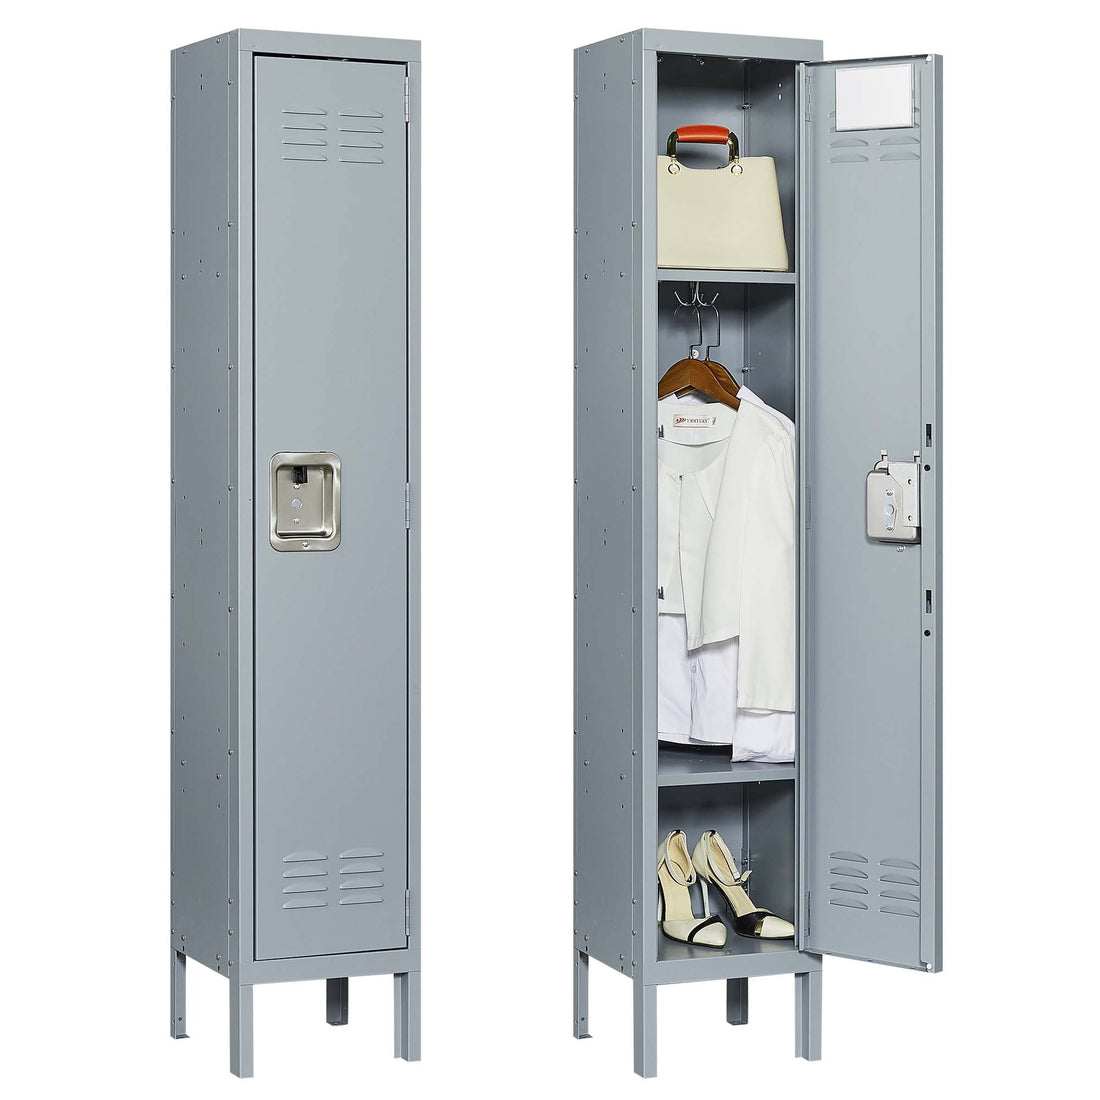 5 Door 66"H Metal Lockers With Lock for freestanding-5 or more spaces-gray-gym-door